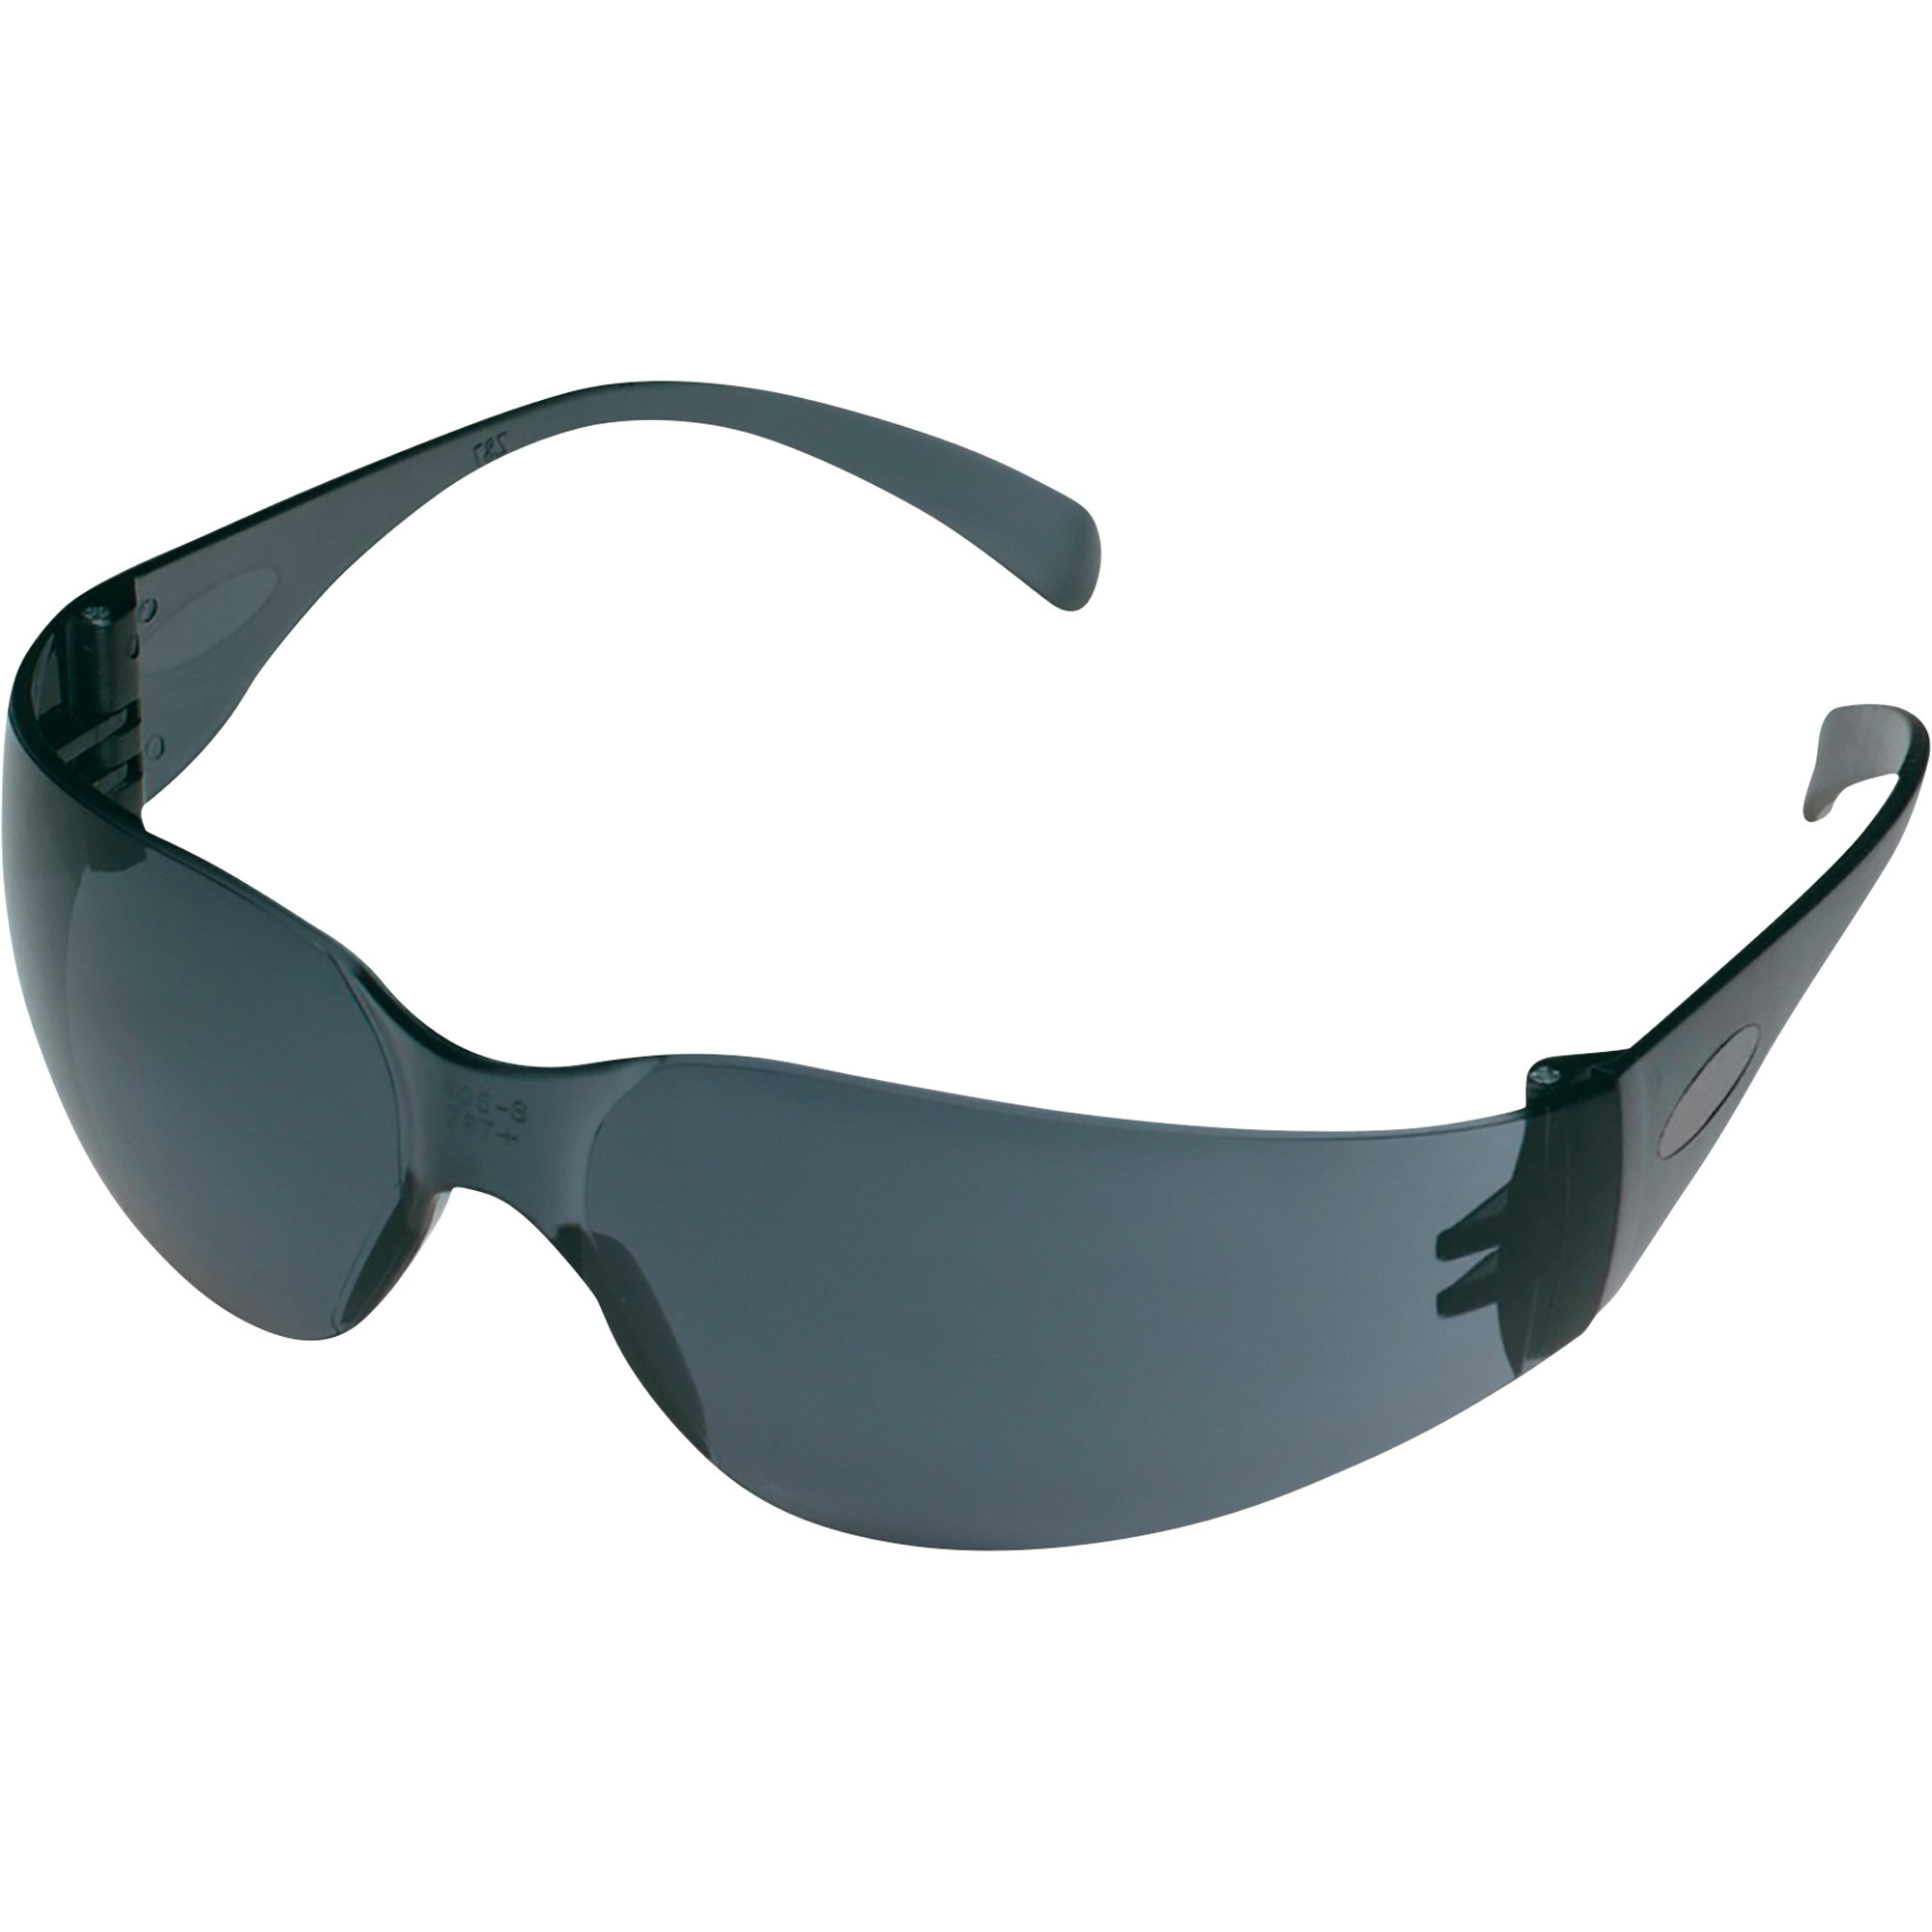 3M Outdoor Safety Glasses, 4-Pack, Gray Lenses, Gray Frames, Model 90954H4-DC